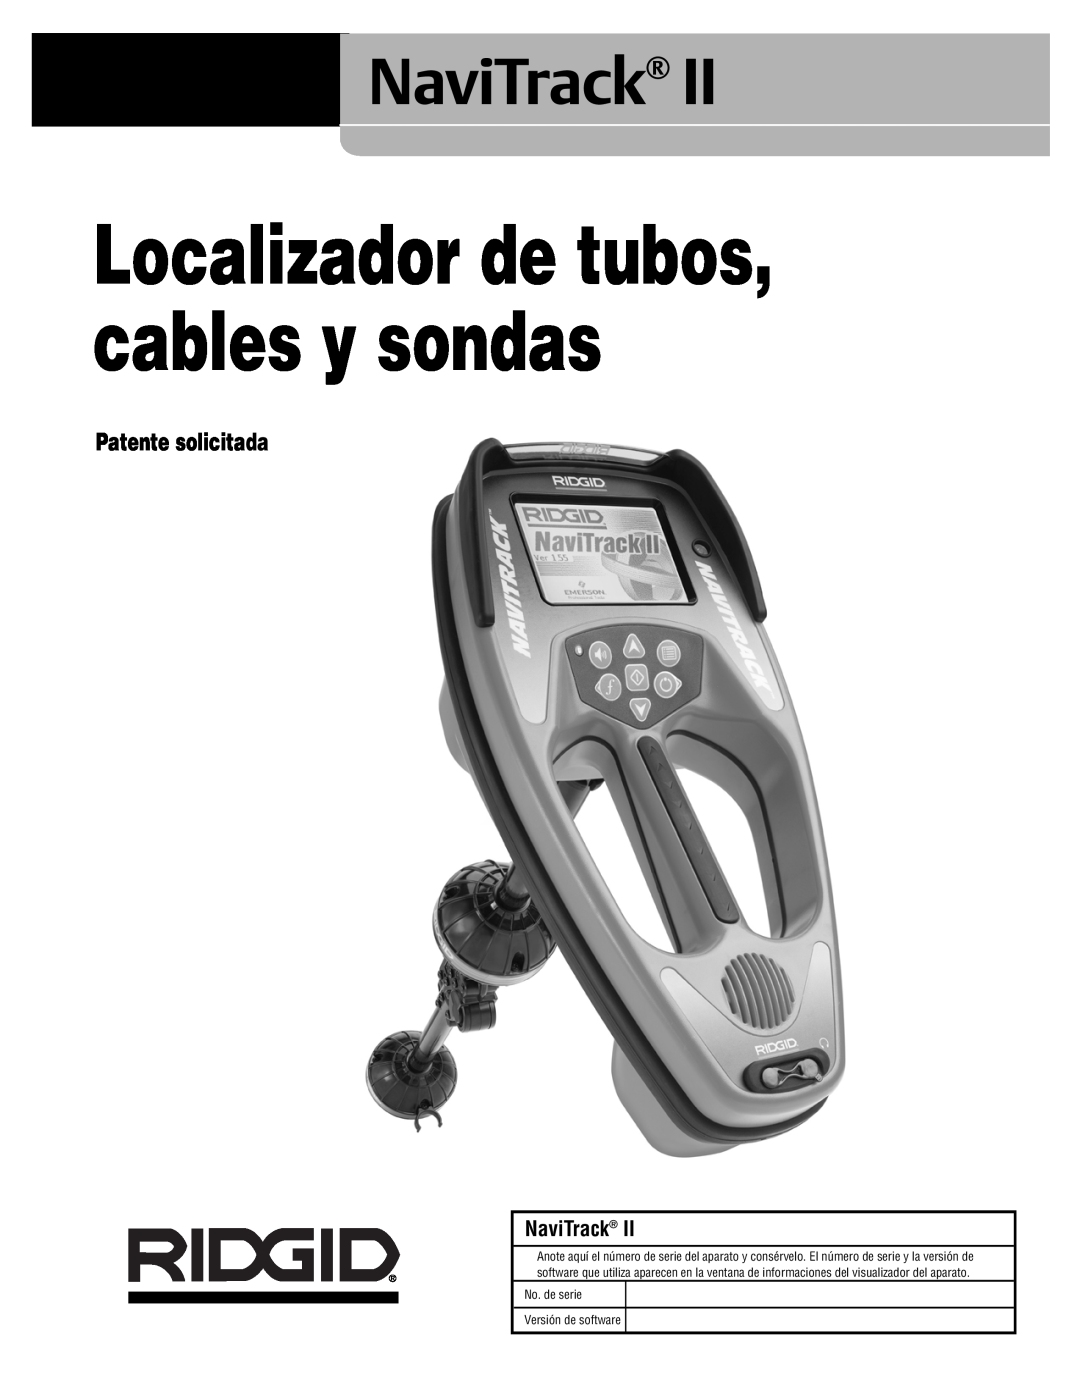 RIDGID Metal Detector manual Patente solicitada, Localizador de tubos, cables y sondas, NaviTrack 